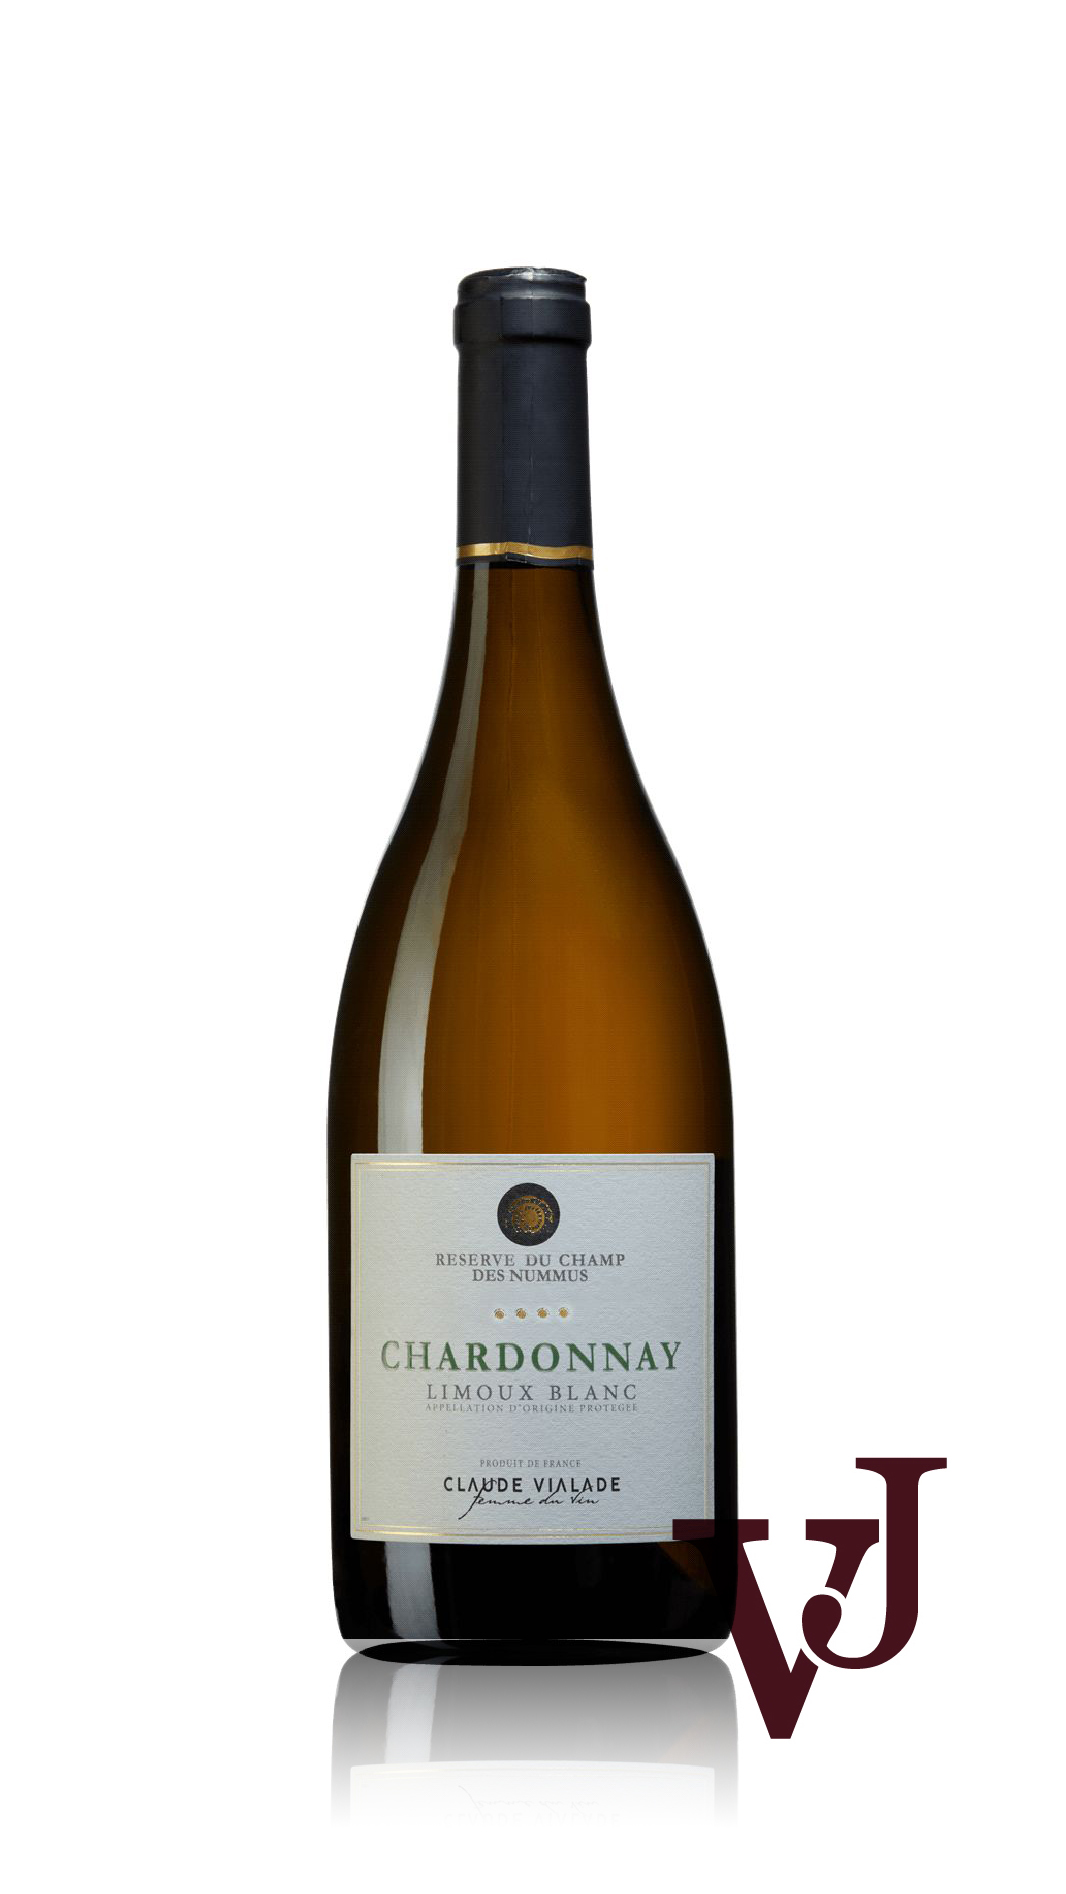 Vitt Vin - Chardonnay Limoux Blanc 2020 artikel nummer 279701 från producenten Etienne Fort från området Frankrike